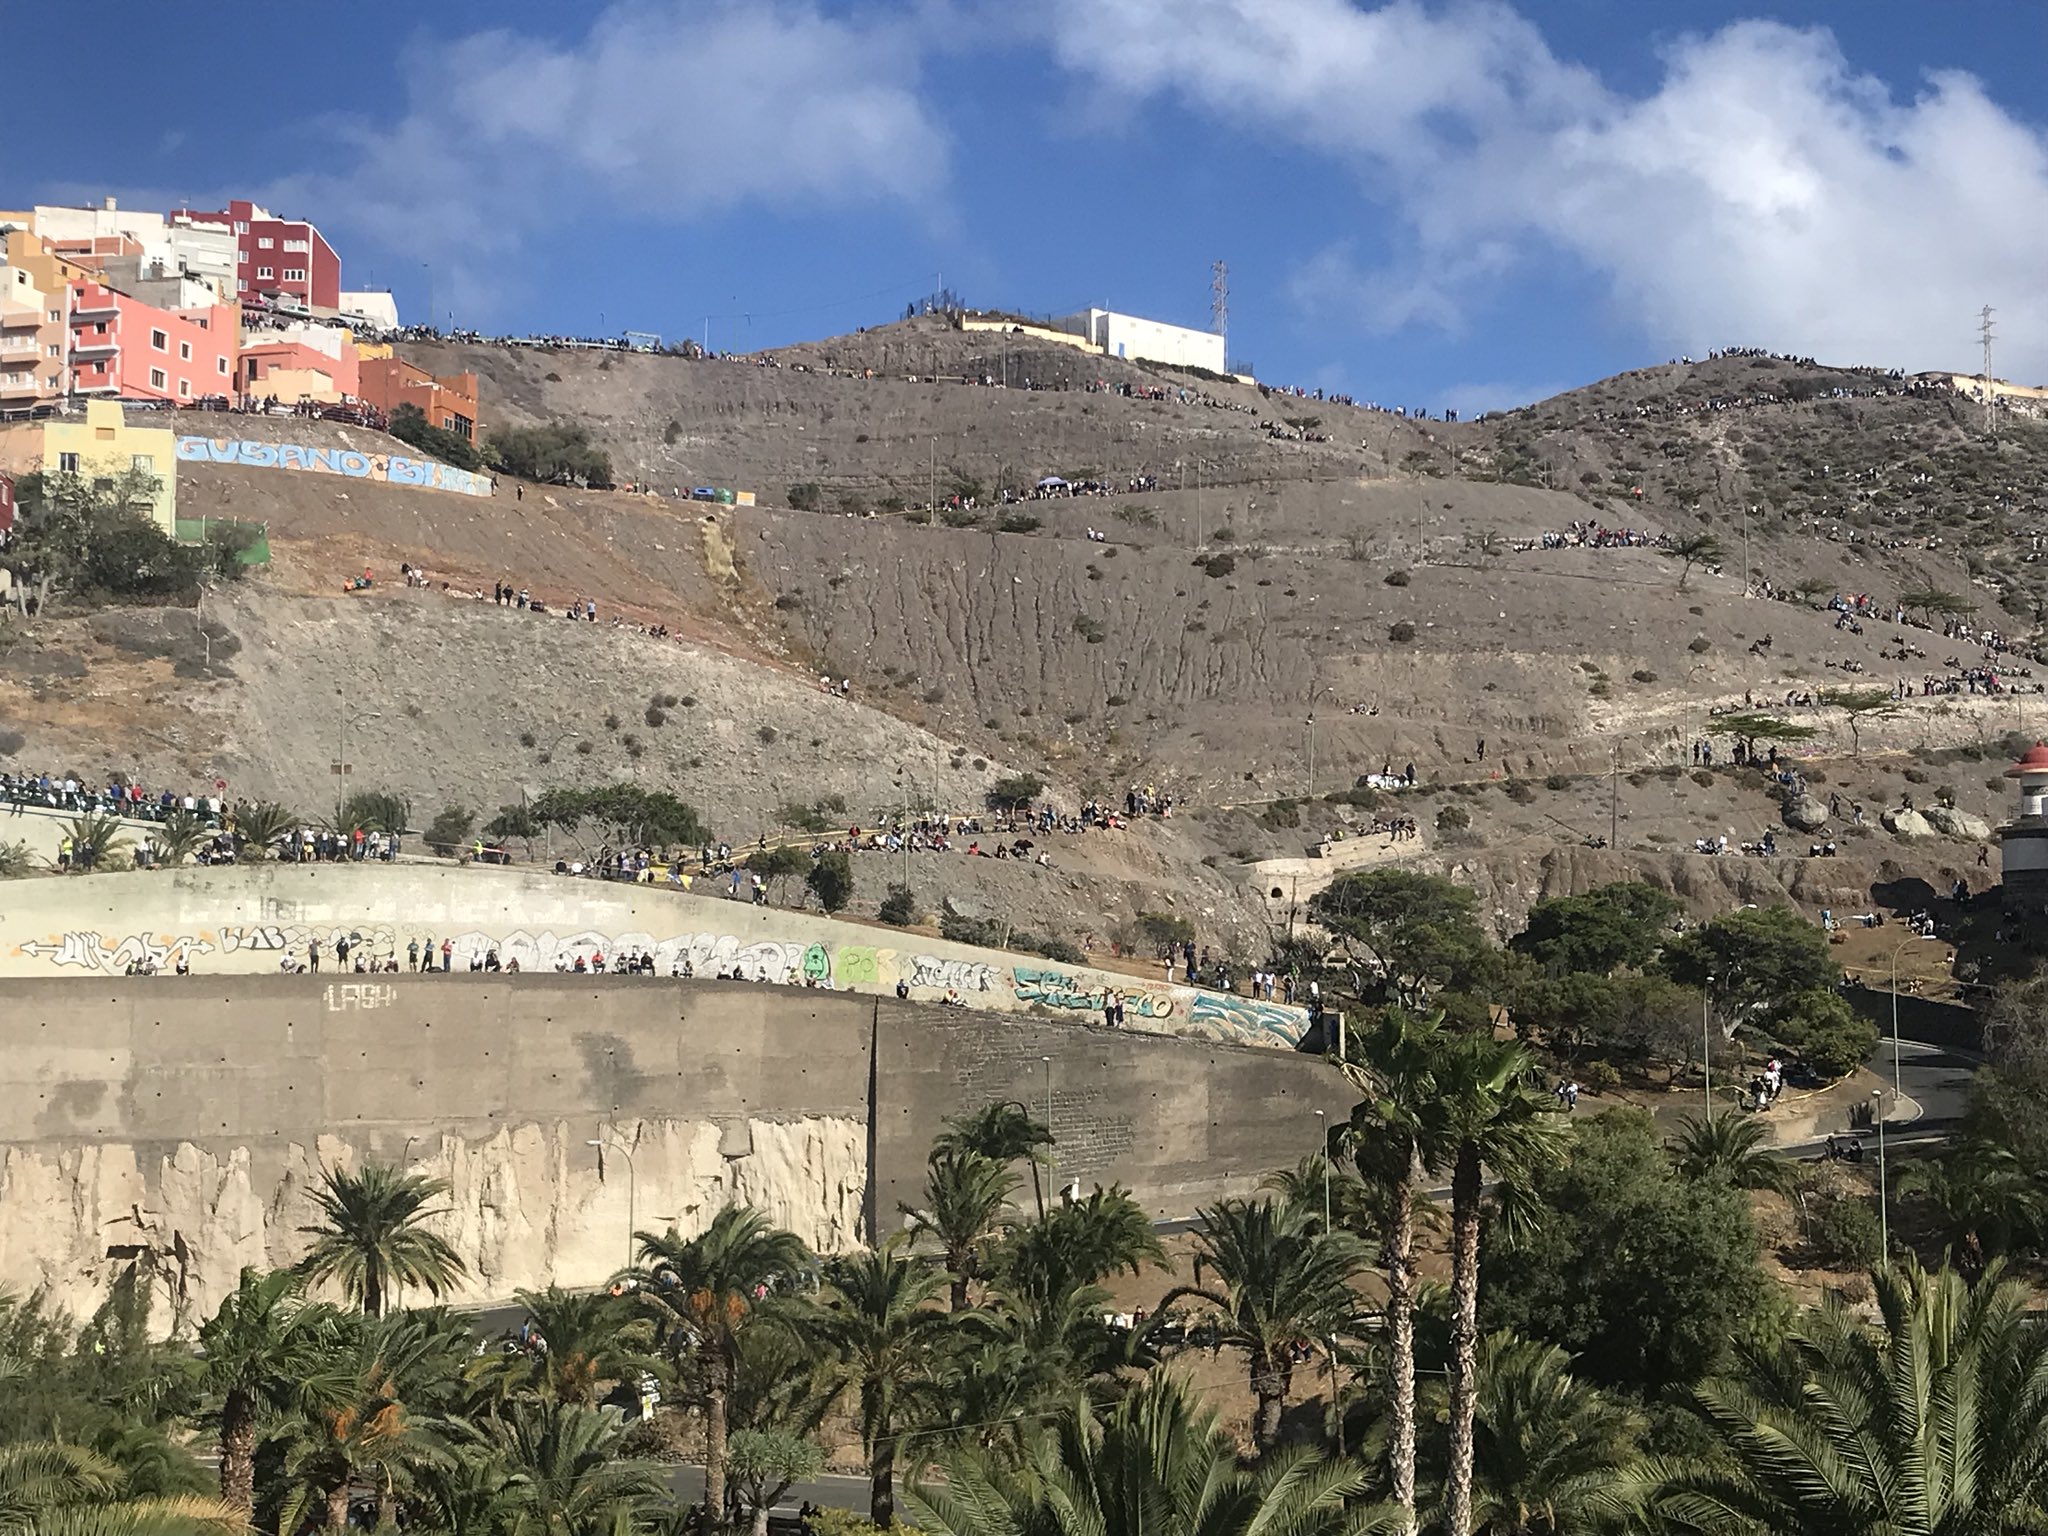 FIAERC - ERC + CERA: 42º Rallye Islas Canarias [3-5 Mayo] - Página 4 DcXipj1XUAI-UMo